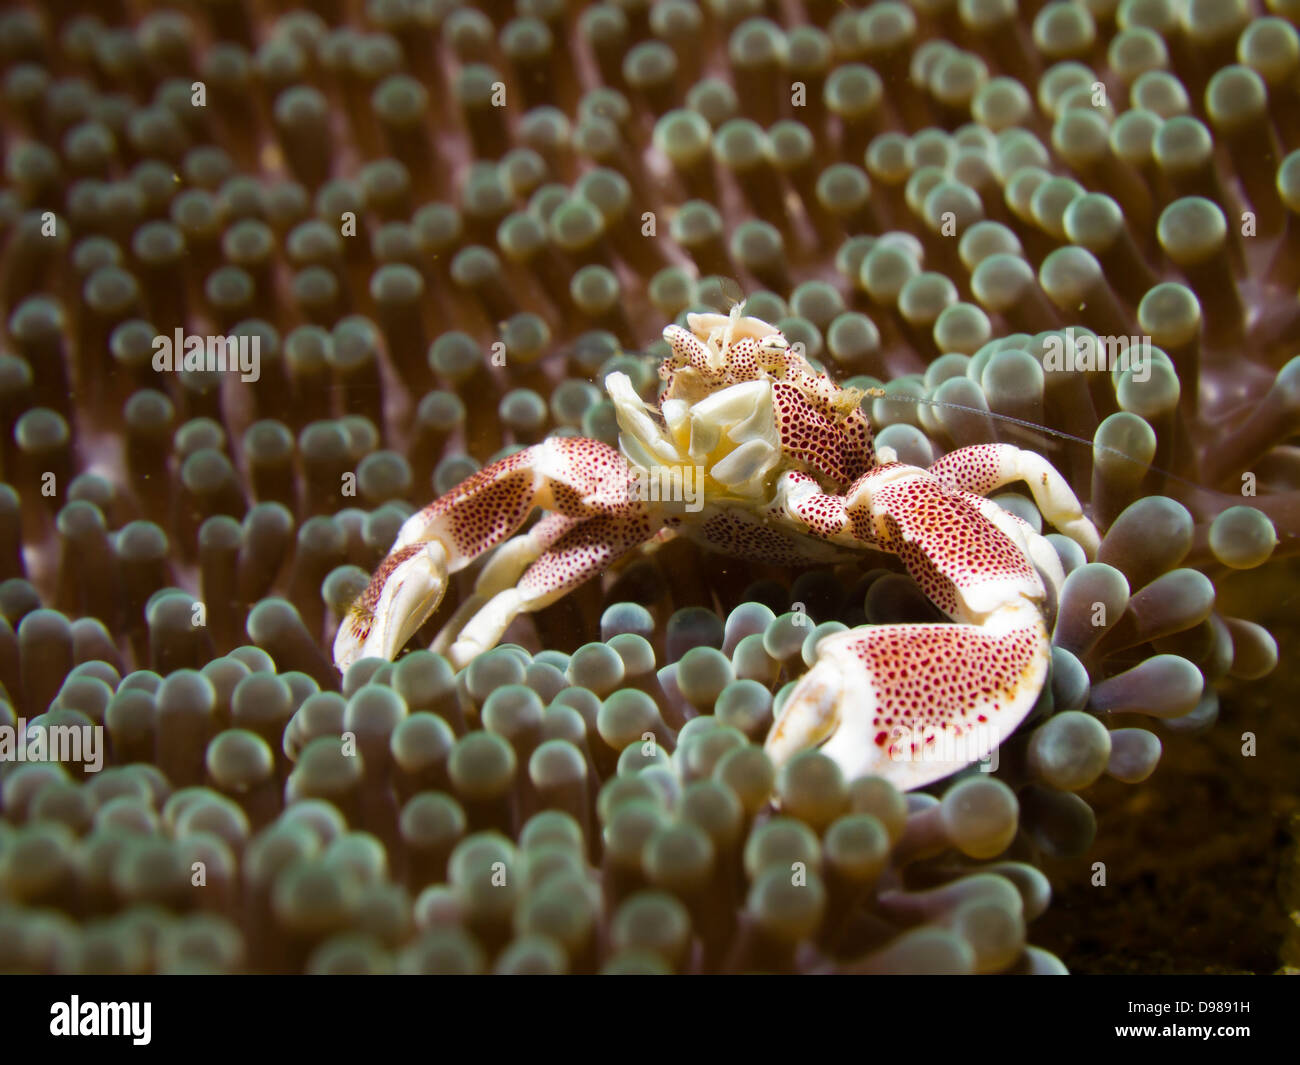 Porcelain crab - Neopetrolisthes maculatus on anemone, Ambon, Indonesia Stock Photo